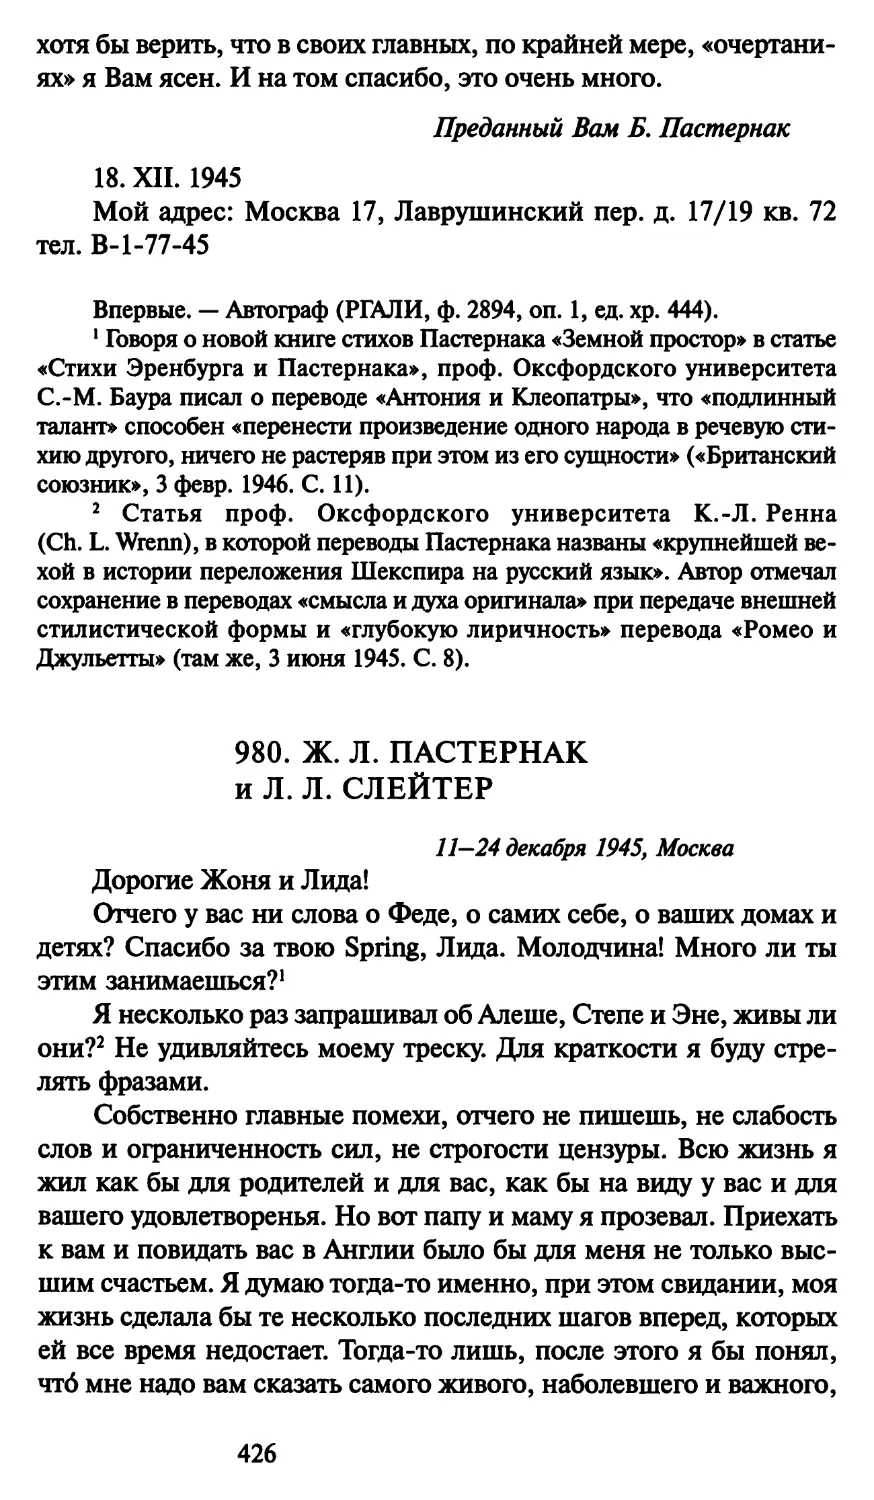 980. Ж. Л. Пастернак и Л. Л. Слейтер 11-24 декабря 1945